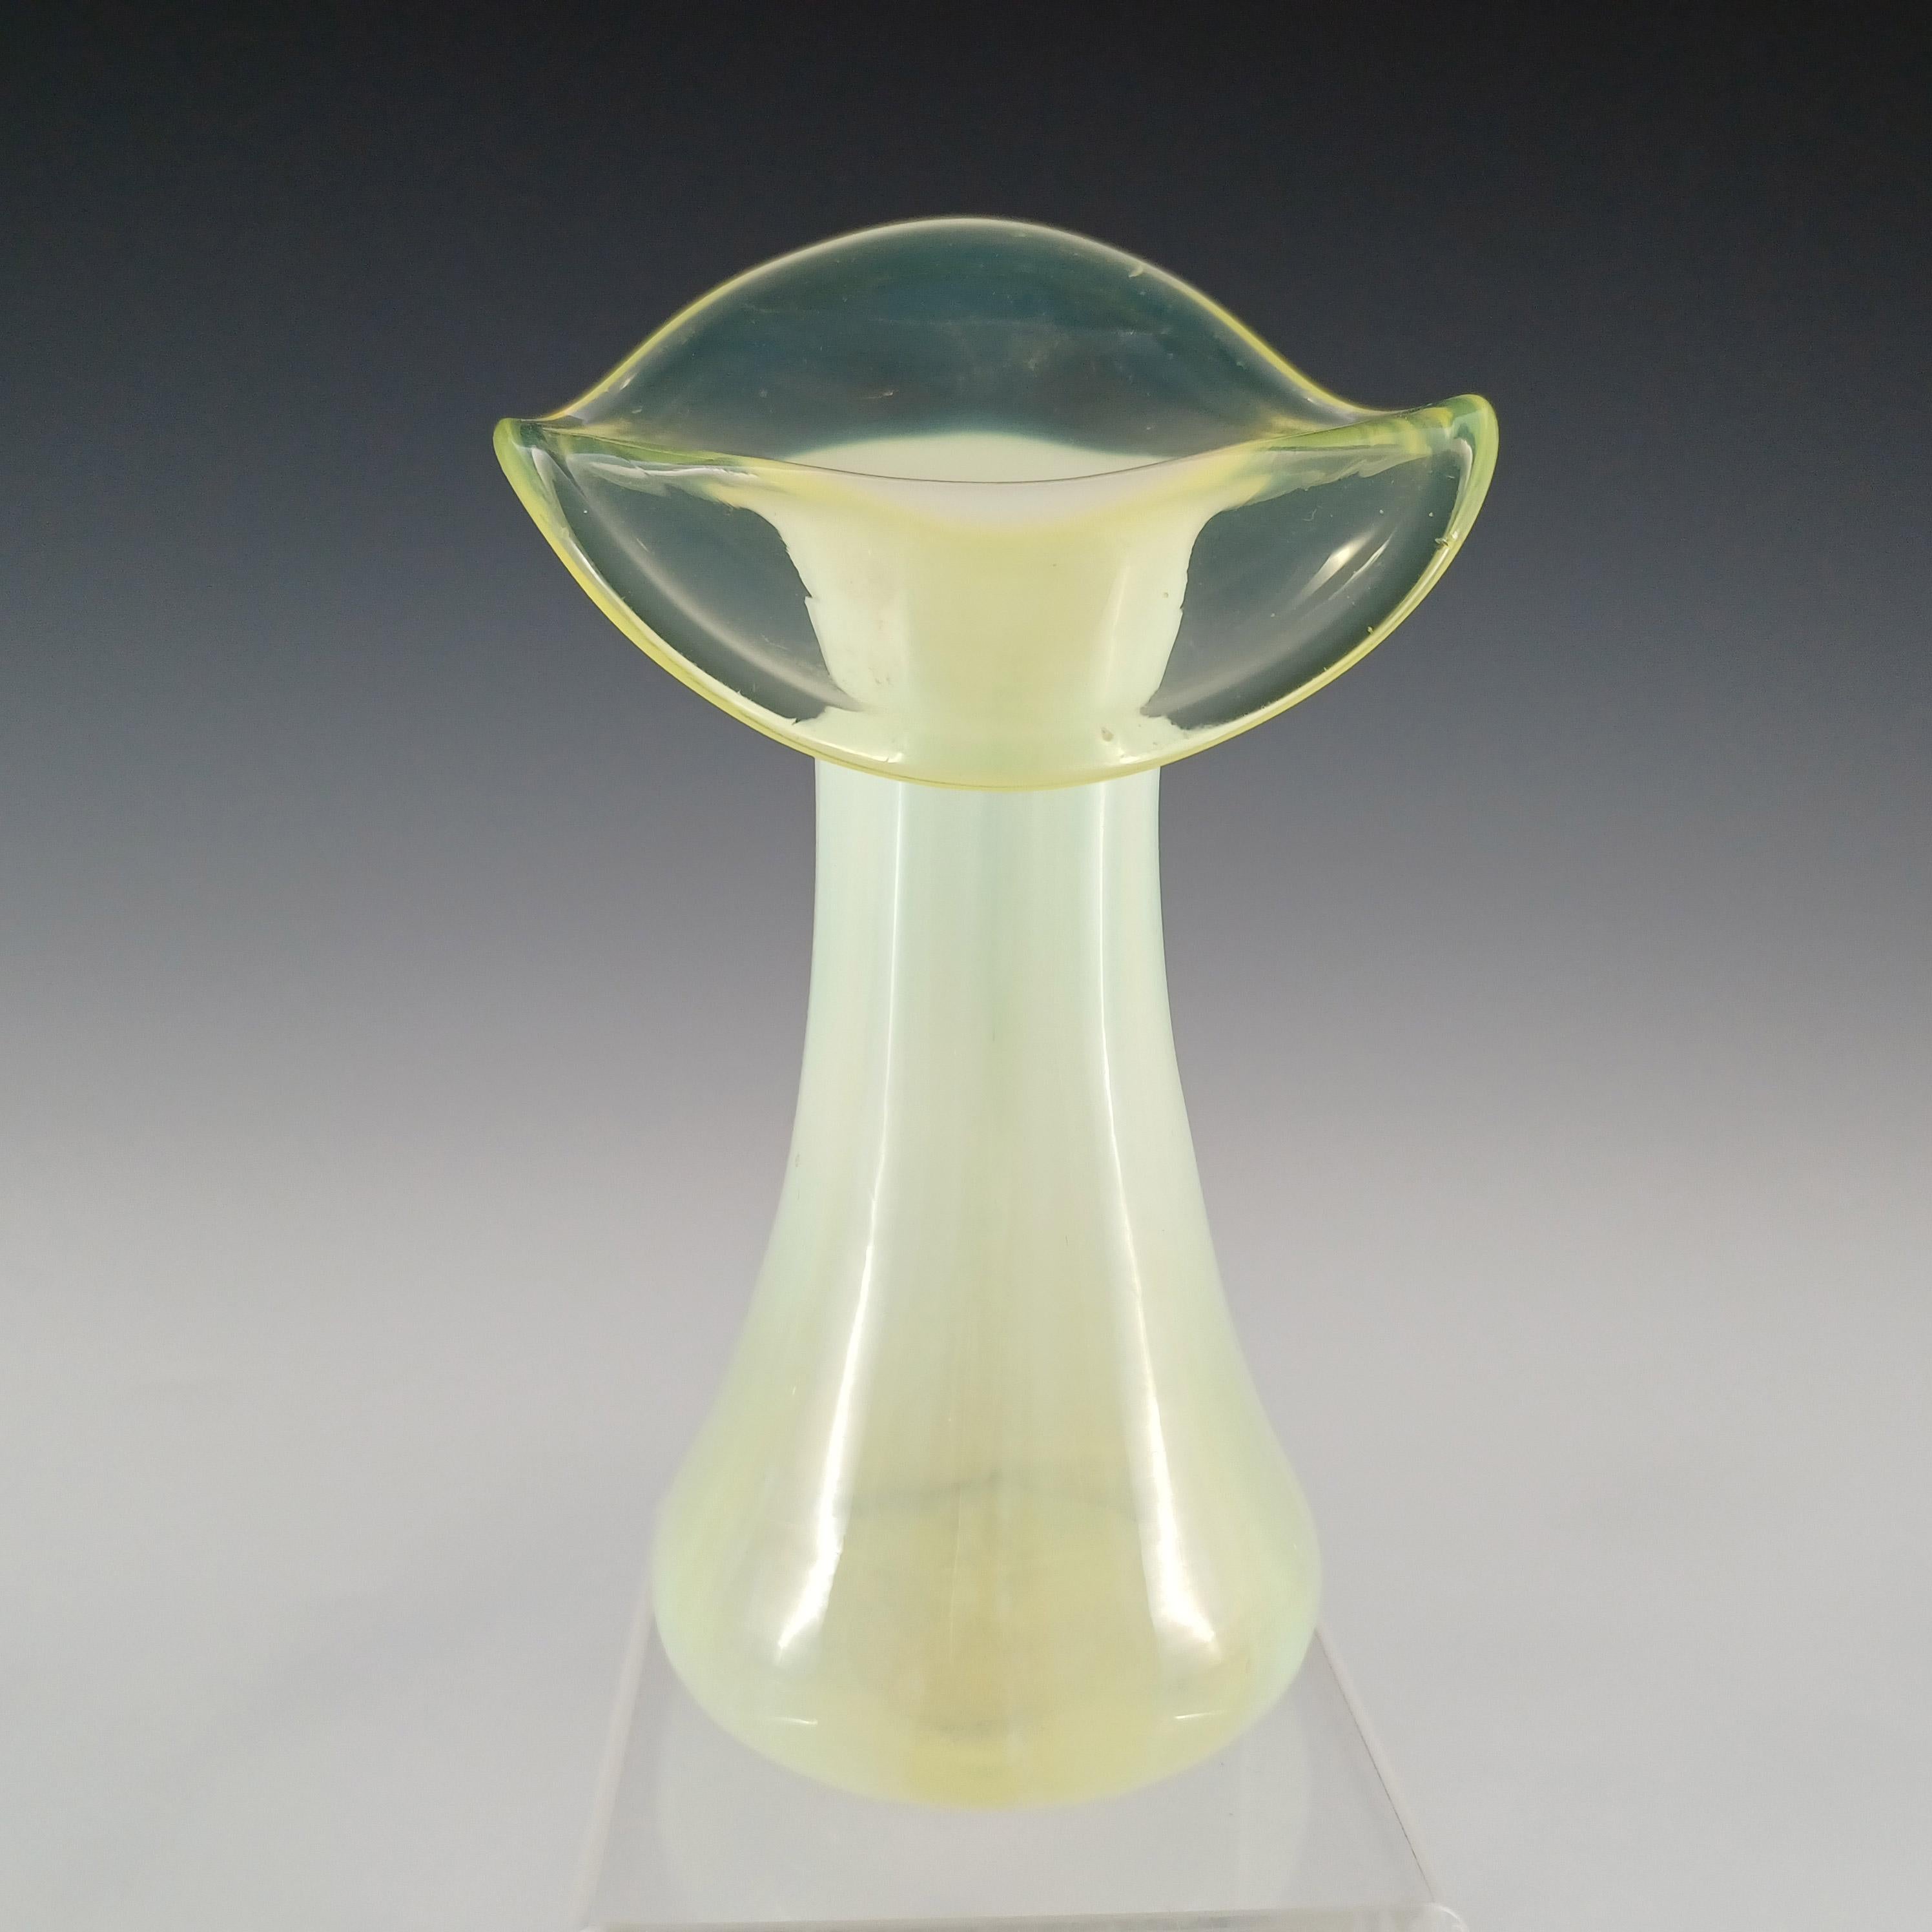 Eine wunderbare viktorianische, gelb-grüne Vaseline-Glasvase mit vertikal gestreiftem, opalisierendem Körper, um 1890. Hergestellt aus Uranglas, das im UV-Licht hellgrün leuchtet.

Bitte beachten Sie: Der Kunststoffständer dient nur zu